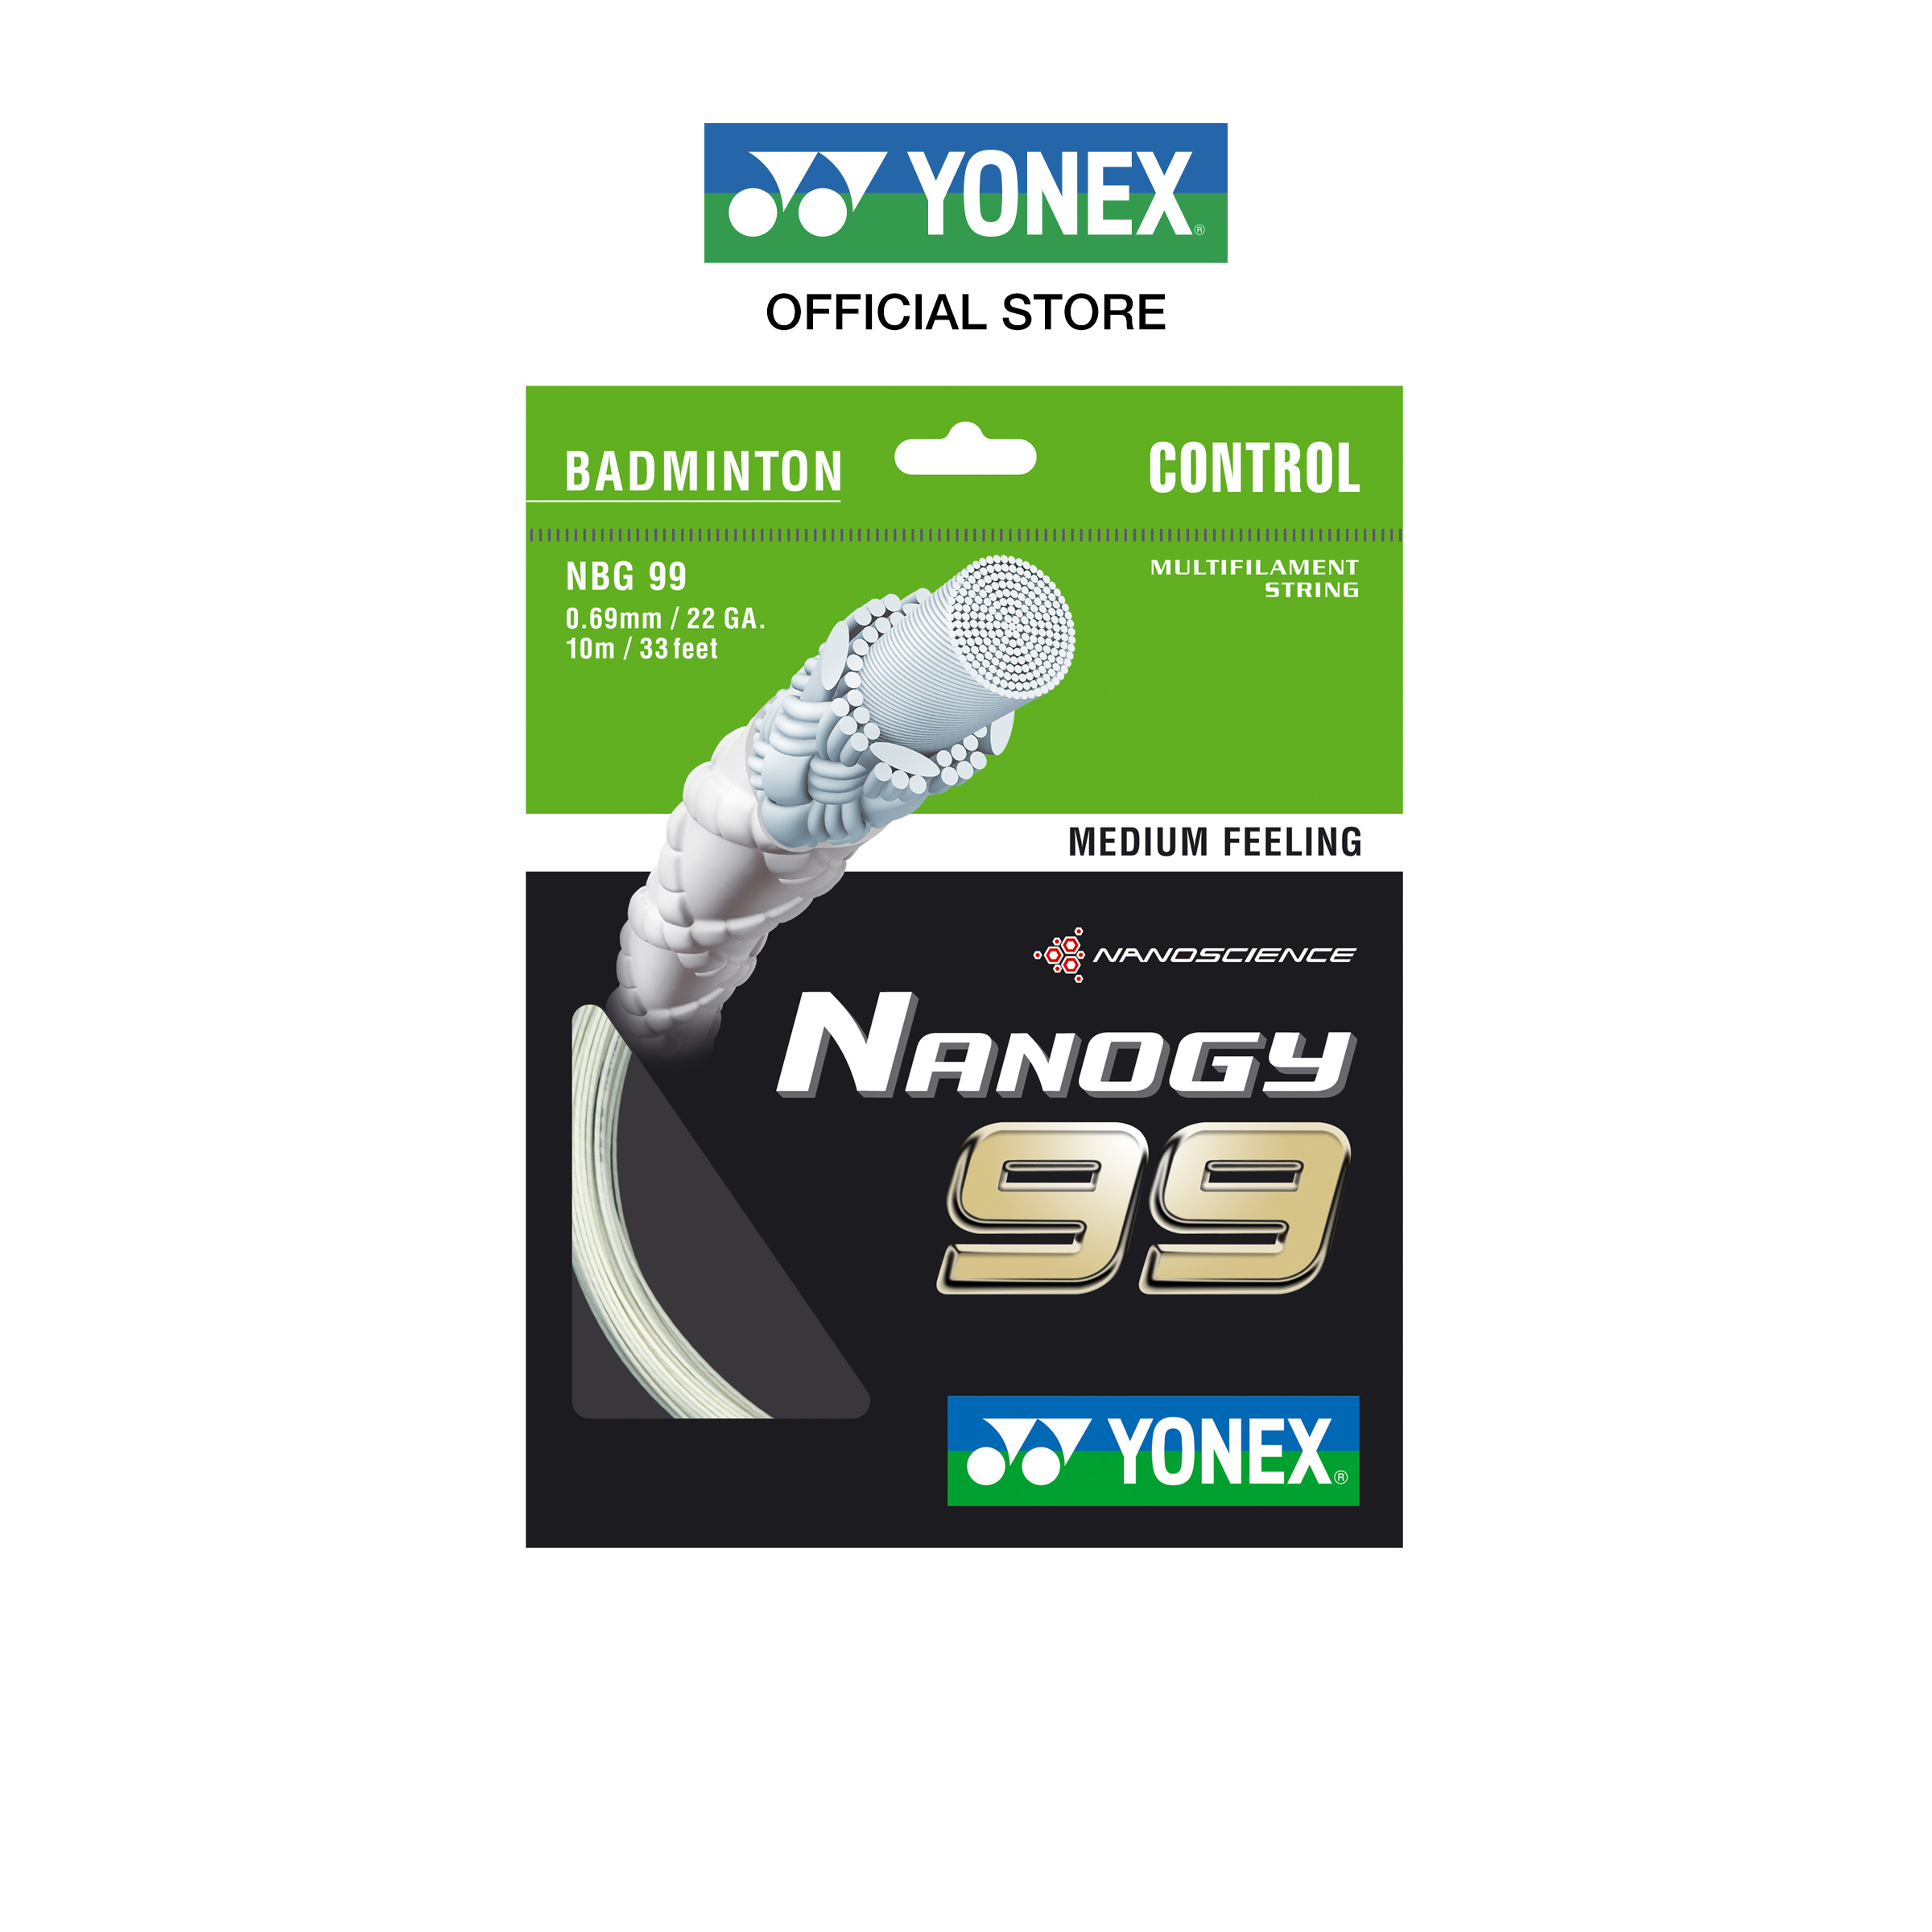 YONEX รุ่น NANOGY 99 เอ็นแบดมินตัน  ขนาดเส้นแนวตั้ง 0.69 มม. ผลิตประเทศญี่ปุ่น เคลือบไนลอนพิเศษให้คอนโทรลสูงสุด